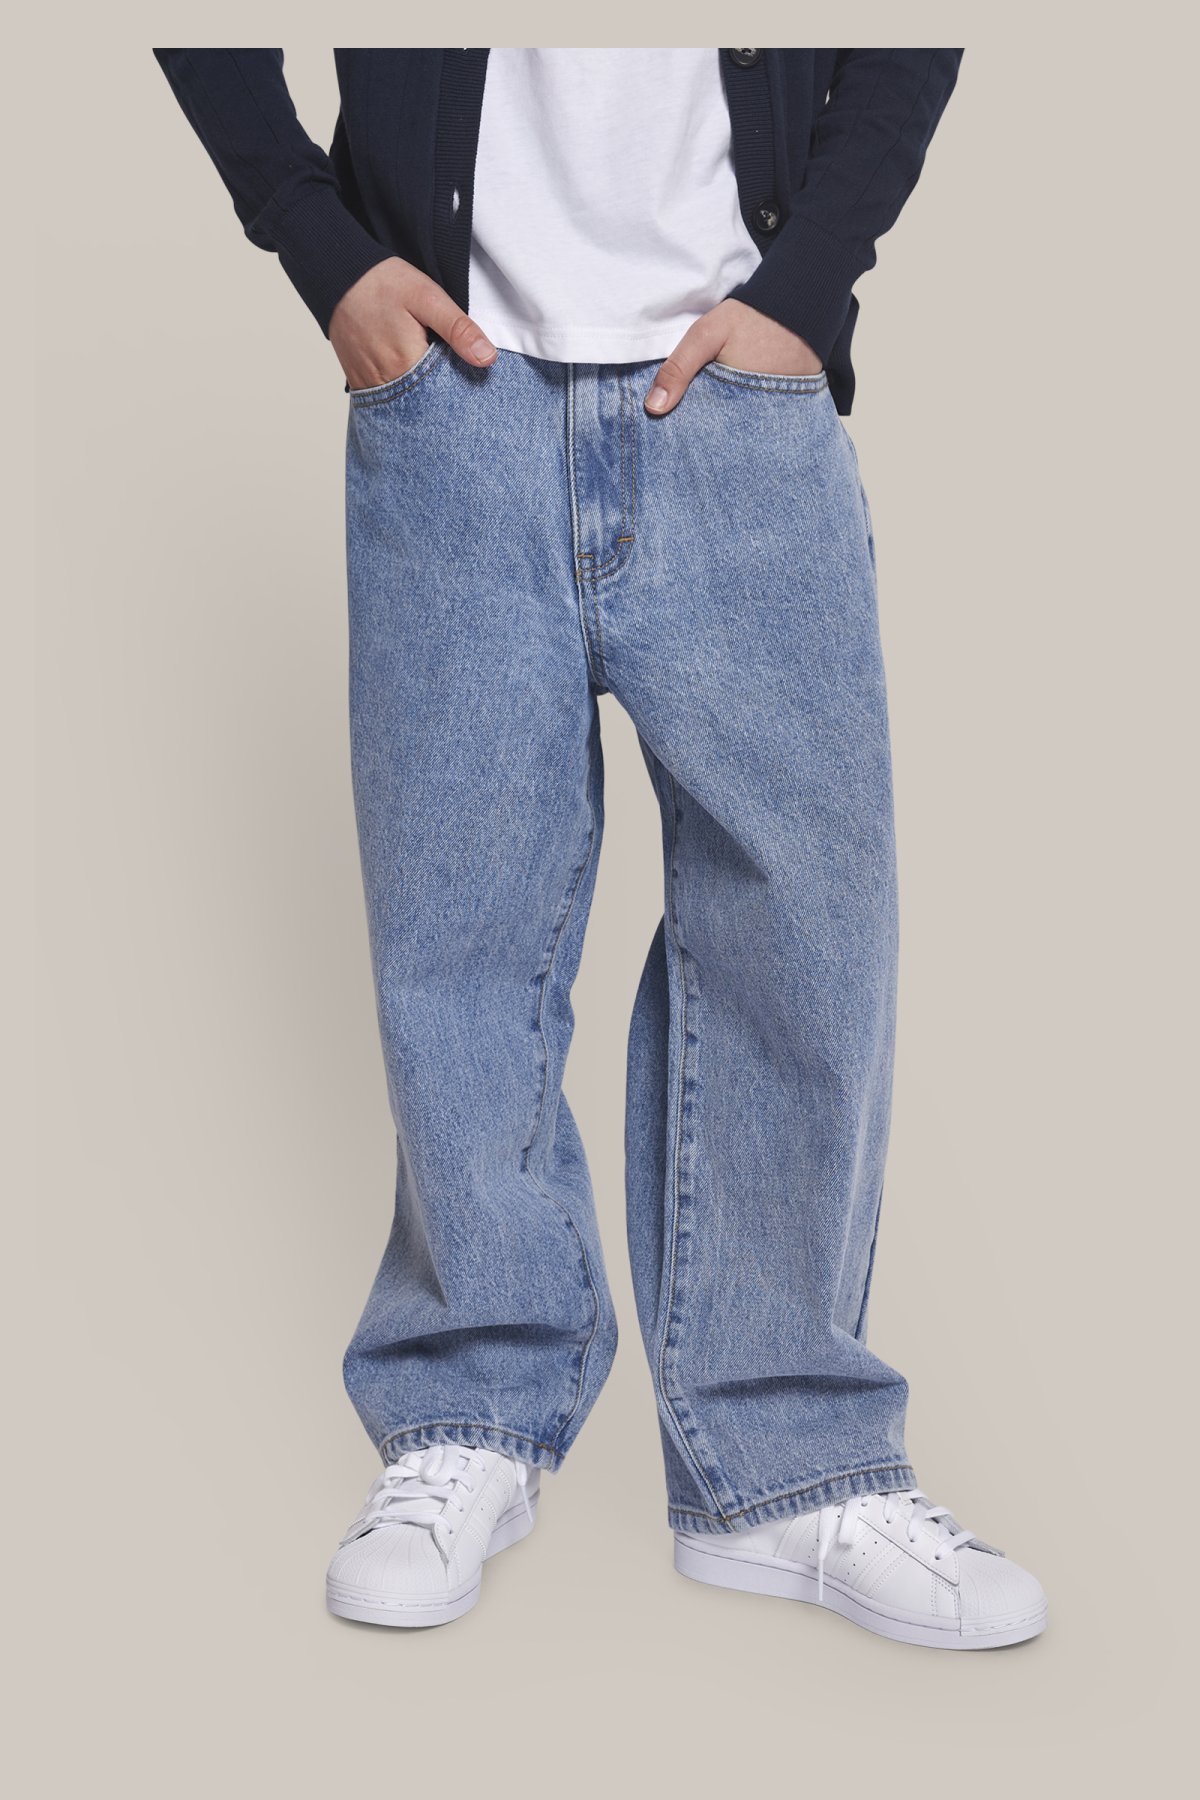 direkte videnskabelig Konsultation Grunt Giant jeans - Teens - Lystrup - Teens Kids Baby